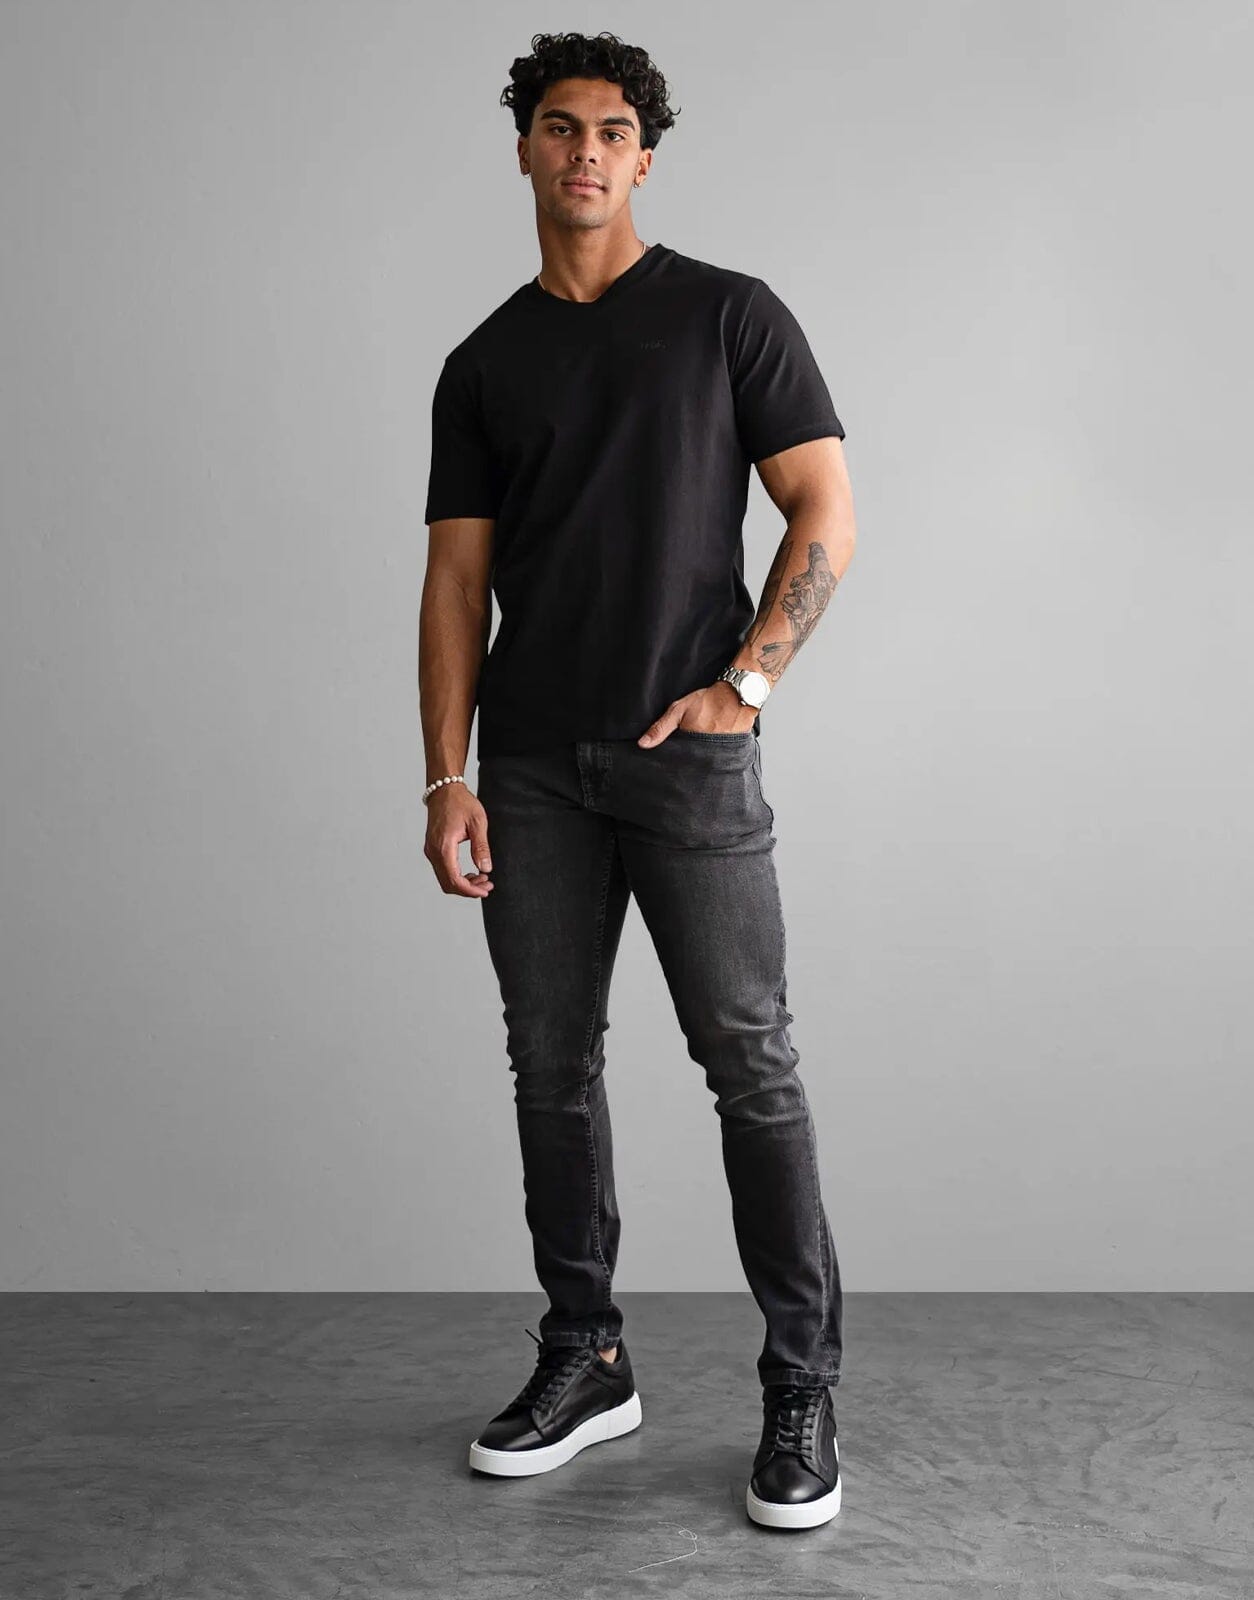 Fade Essential V-Neck Black T-Shirt - Subwear